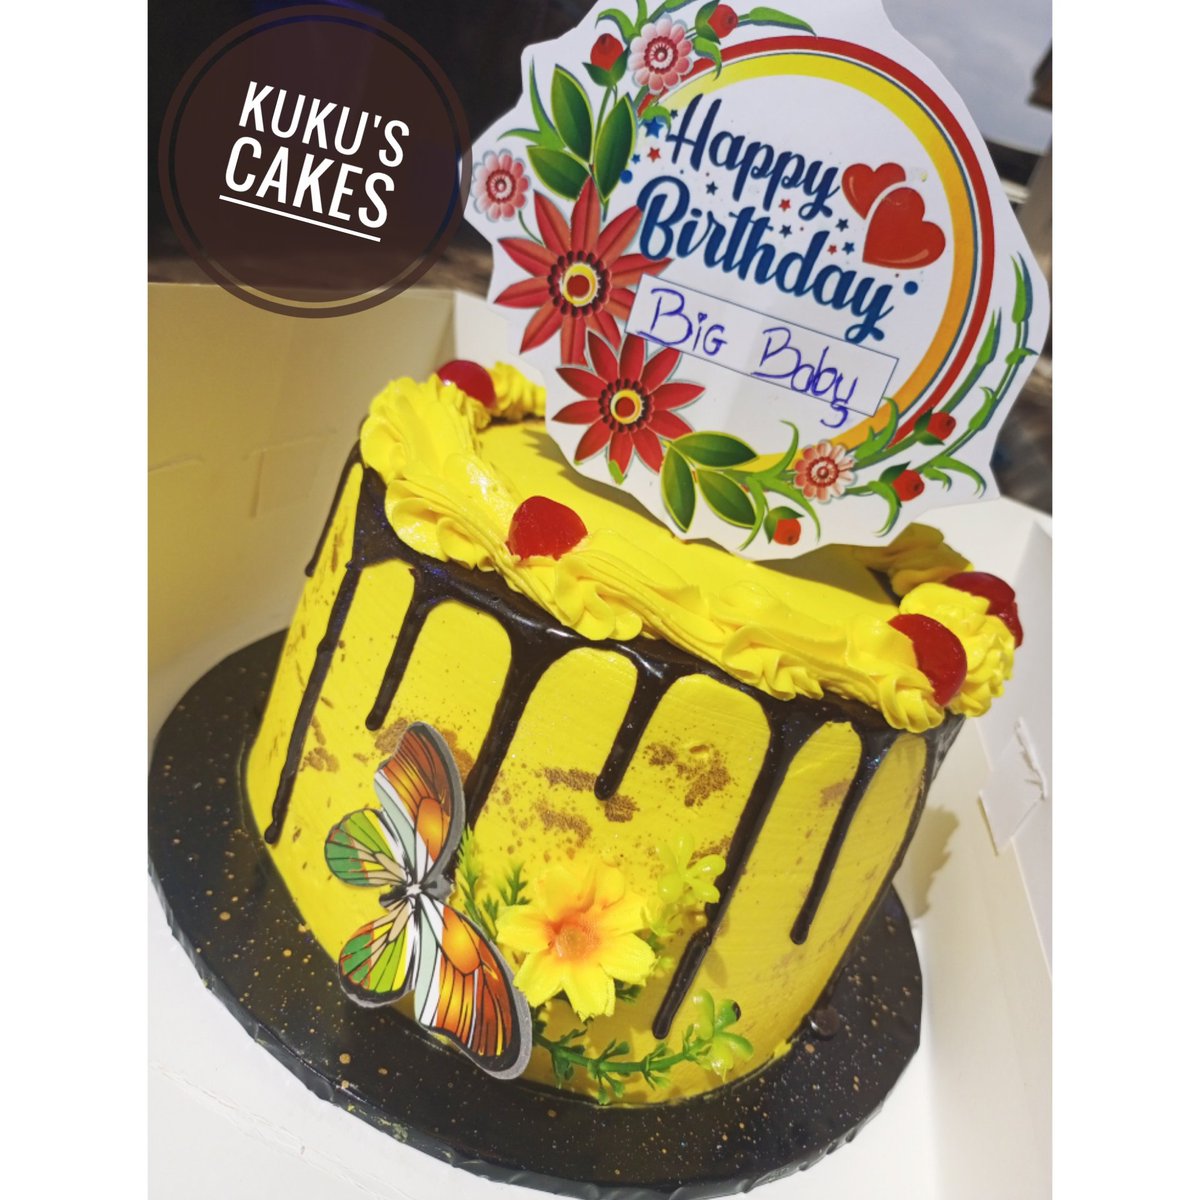 Yellow beaut 💛😍
#kukuscakes #jos #redvelvet #chocolatecake #repeatdesign 
#josbaker